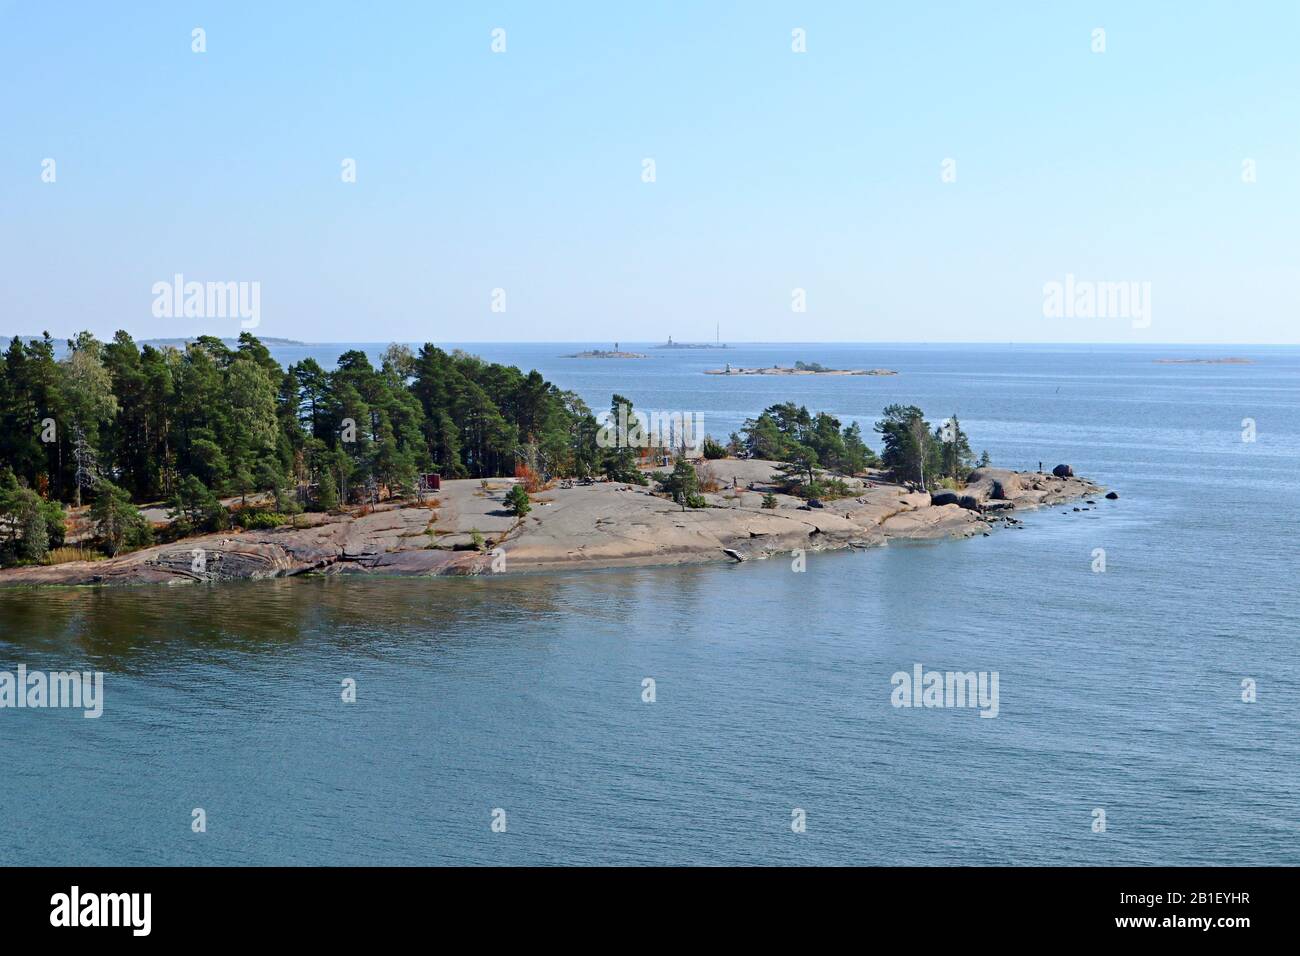 Küsteninsel in der Nähe von Helsinki Finnland skandinavische Sommerruhe Urlaub Urlaub auf der ostsee. Natursteinstrand Stockfoto